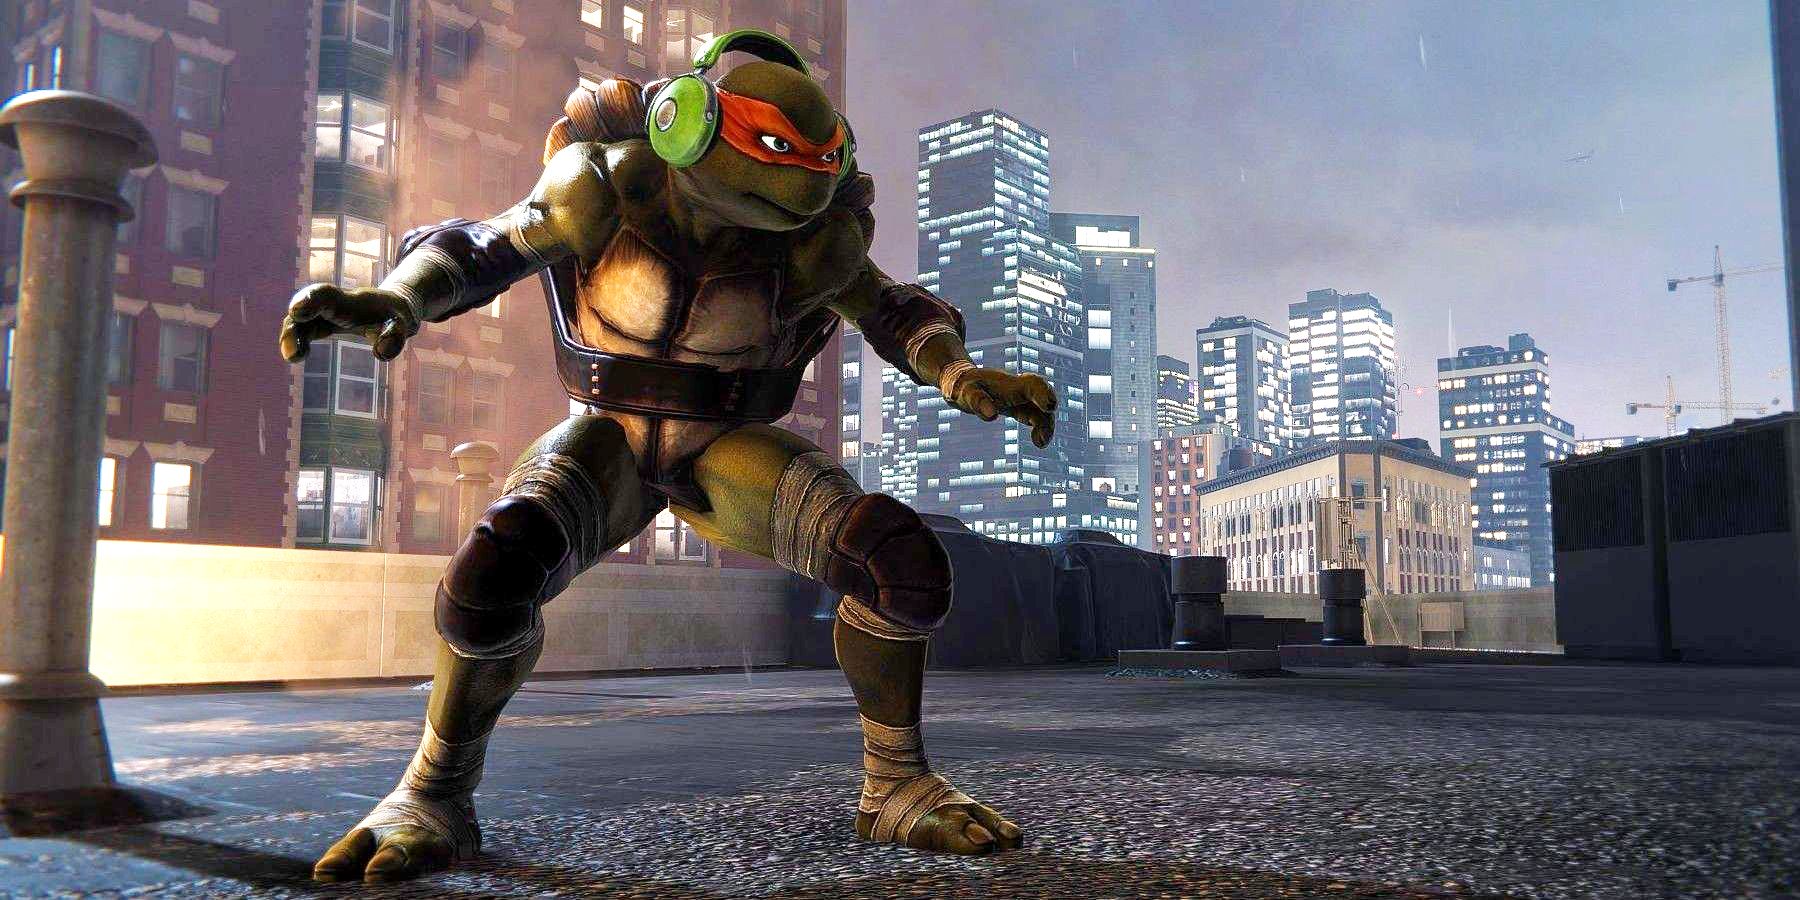 Michelangelo Teenage Mutant Ninja Turtles Marvel